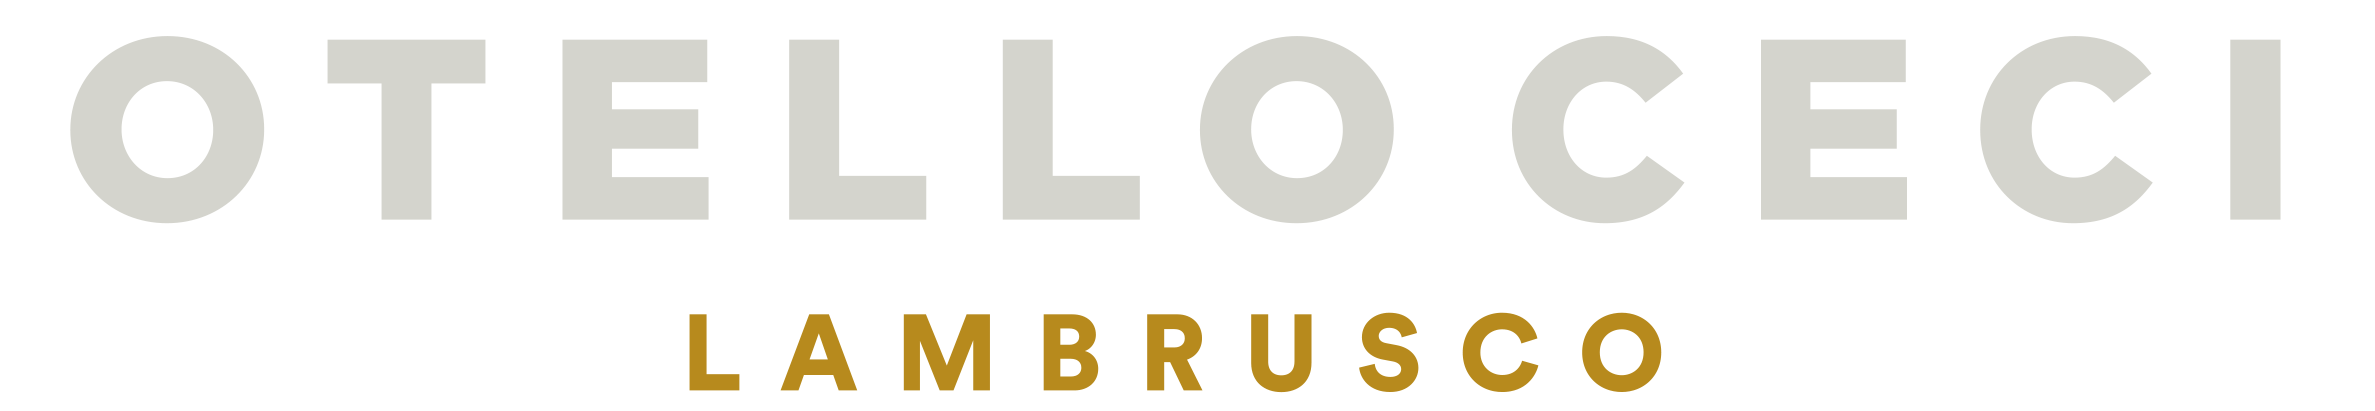 Otello Ceci Lambrusco logo